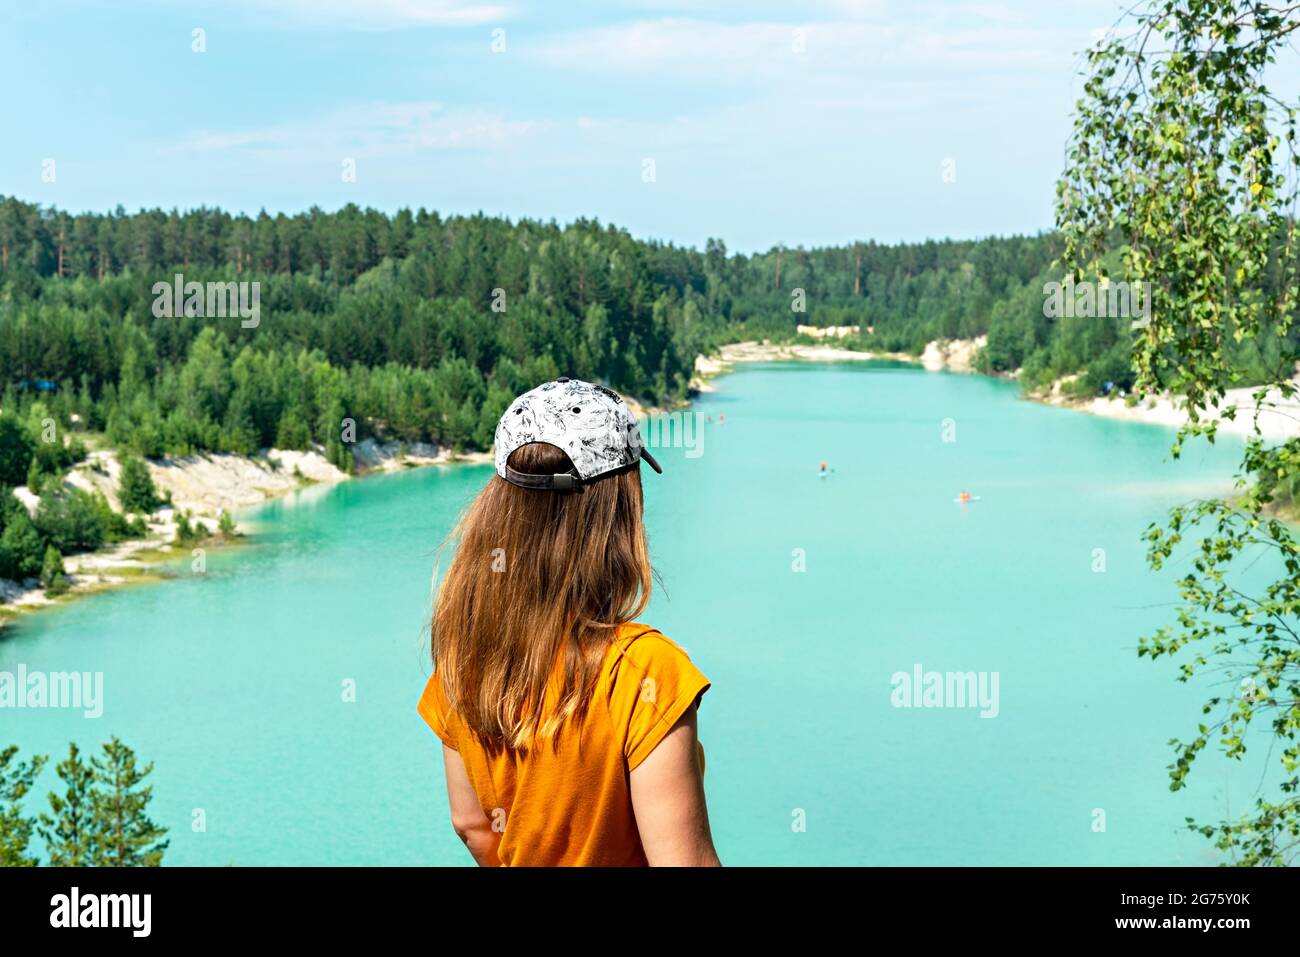 Rückansicht einer jungen blonden Frau, die in einer Mütze und einem Senf-T-Shirt auf der Klippe eines blau-türkisfarbenen Sees oder Flusses und eines Nadelwaldes steht, tr Stockfoto